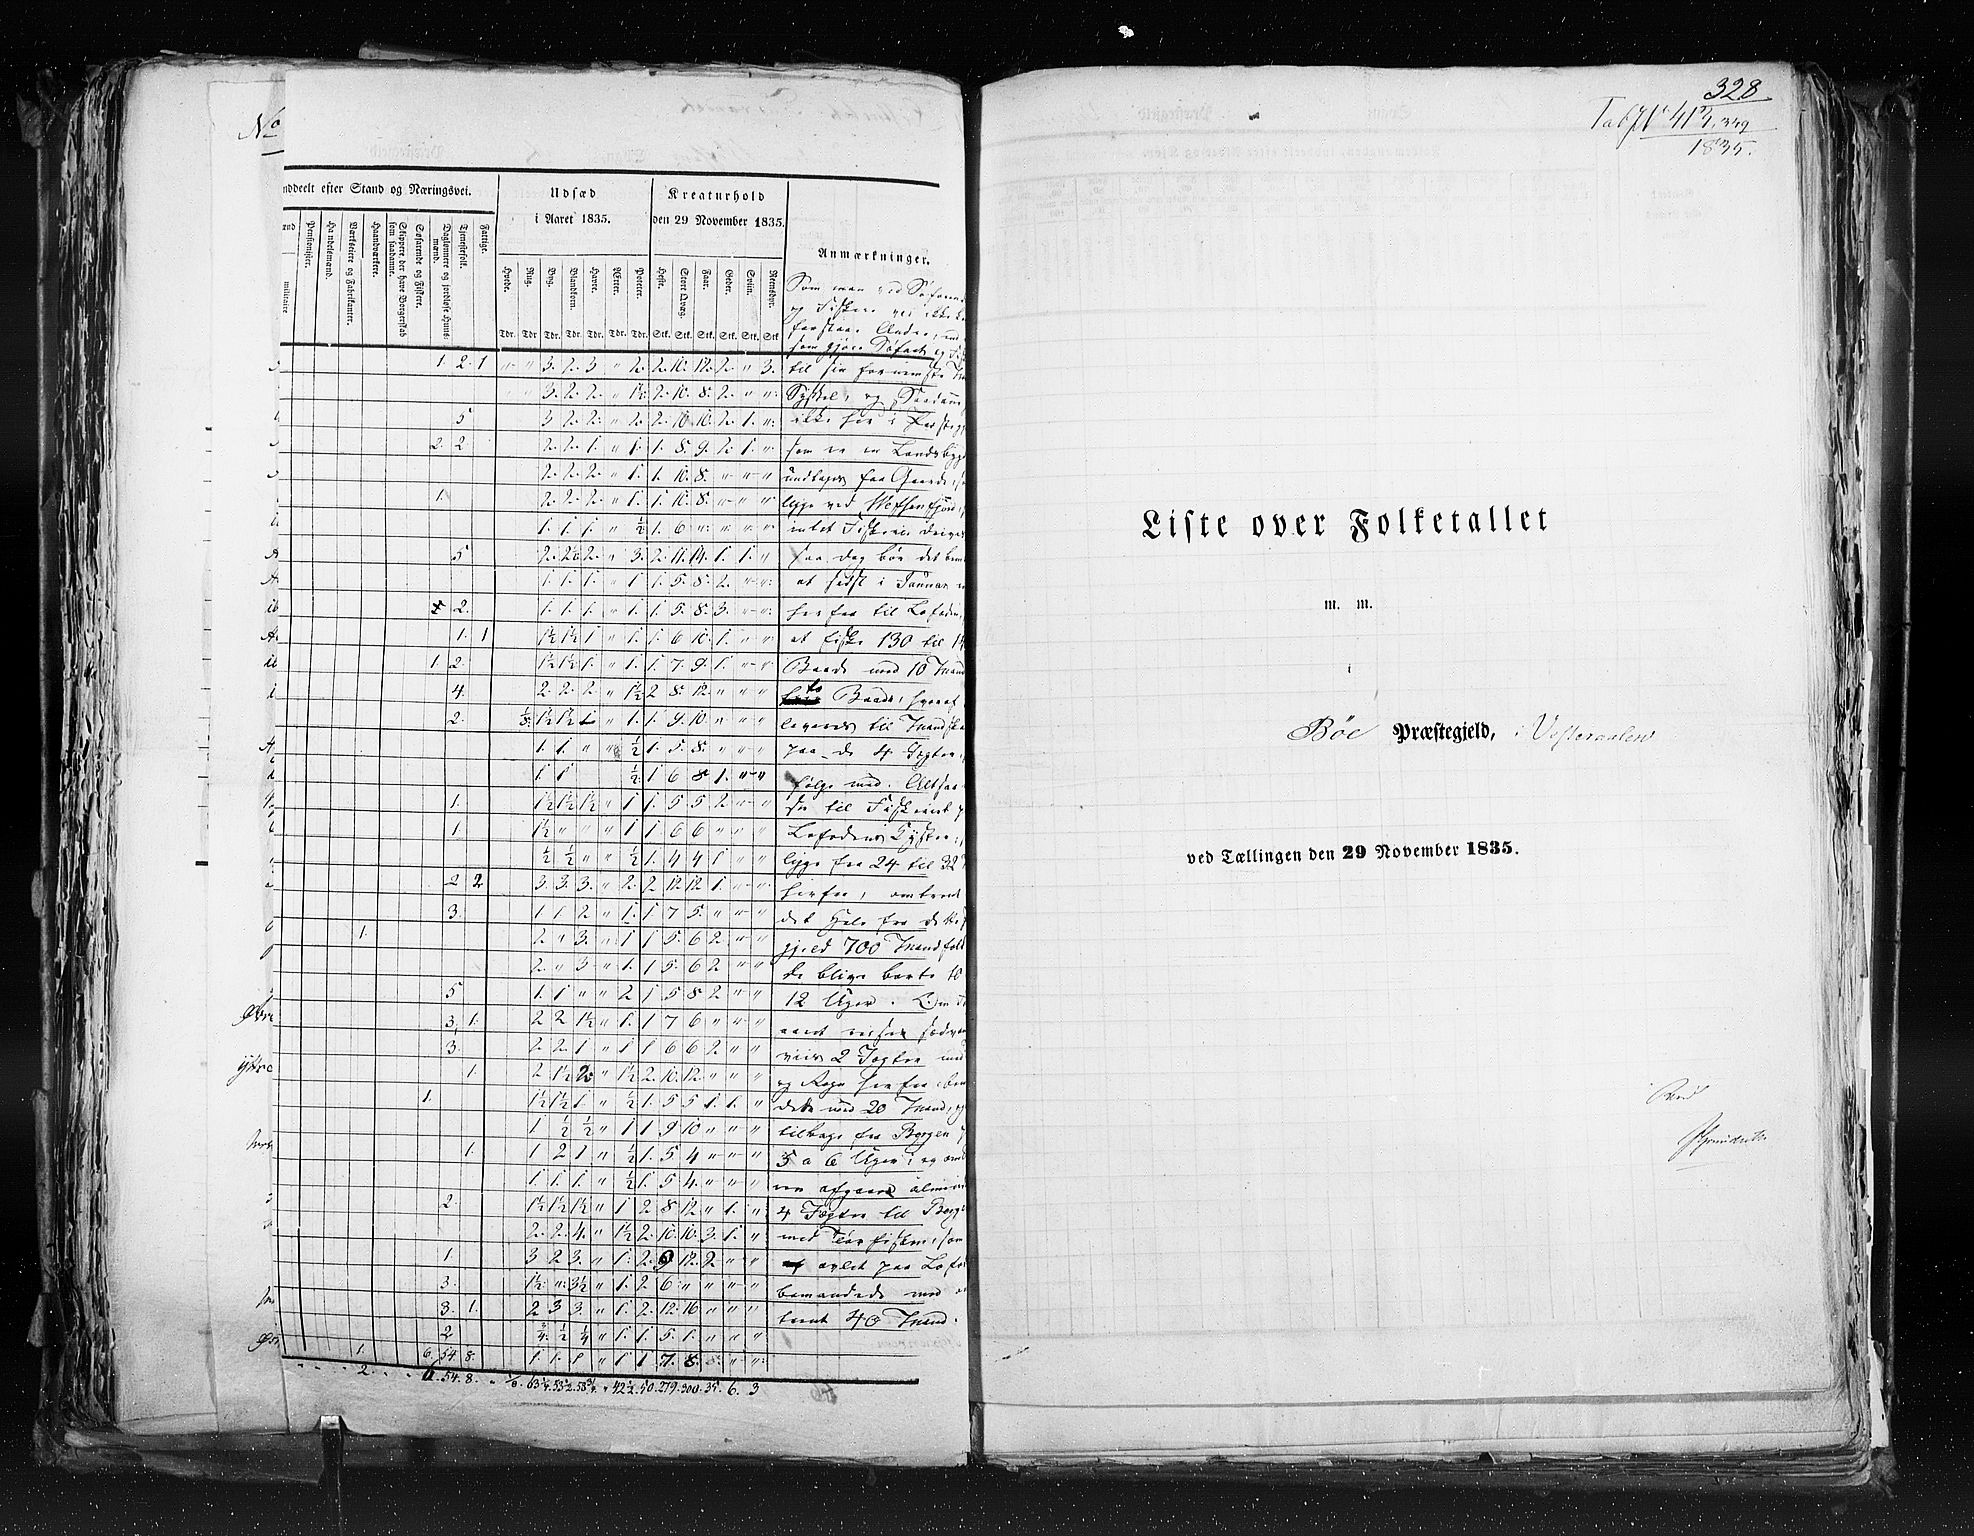 RA, Folketellingen 1835, bind 9: Nordre Trondhjem amt, Nordland amt og Finnmarken amt, 1835, s. 328